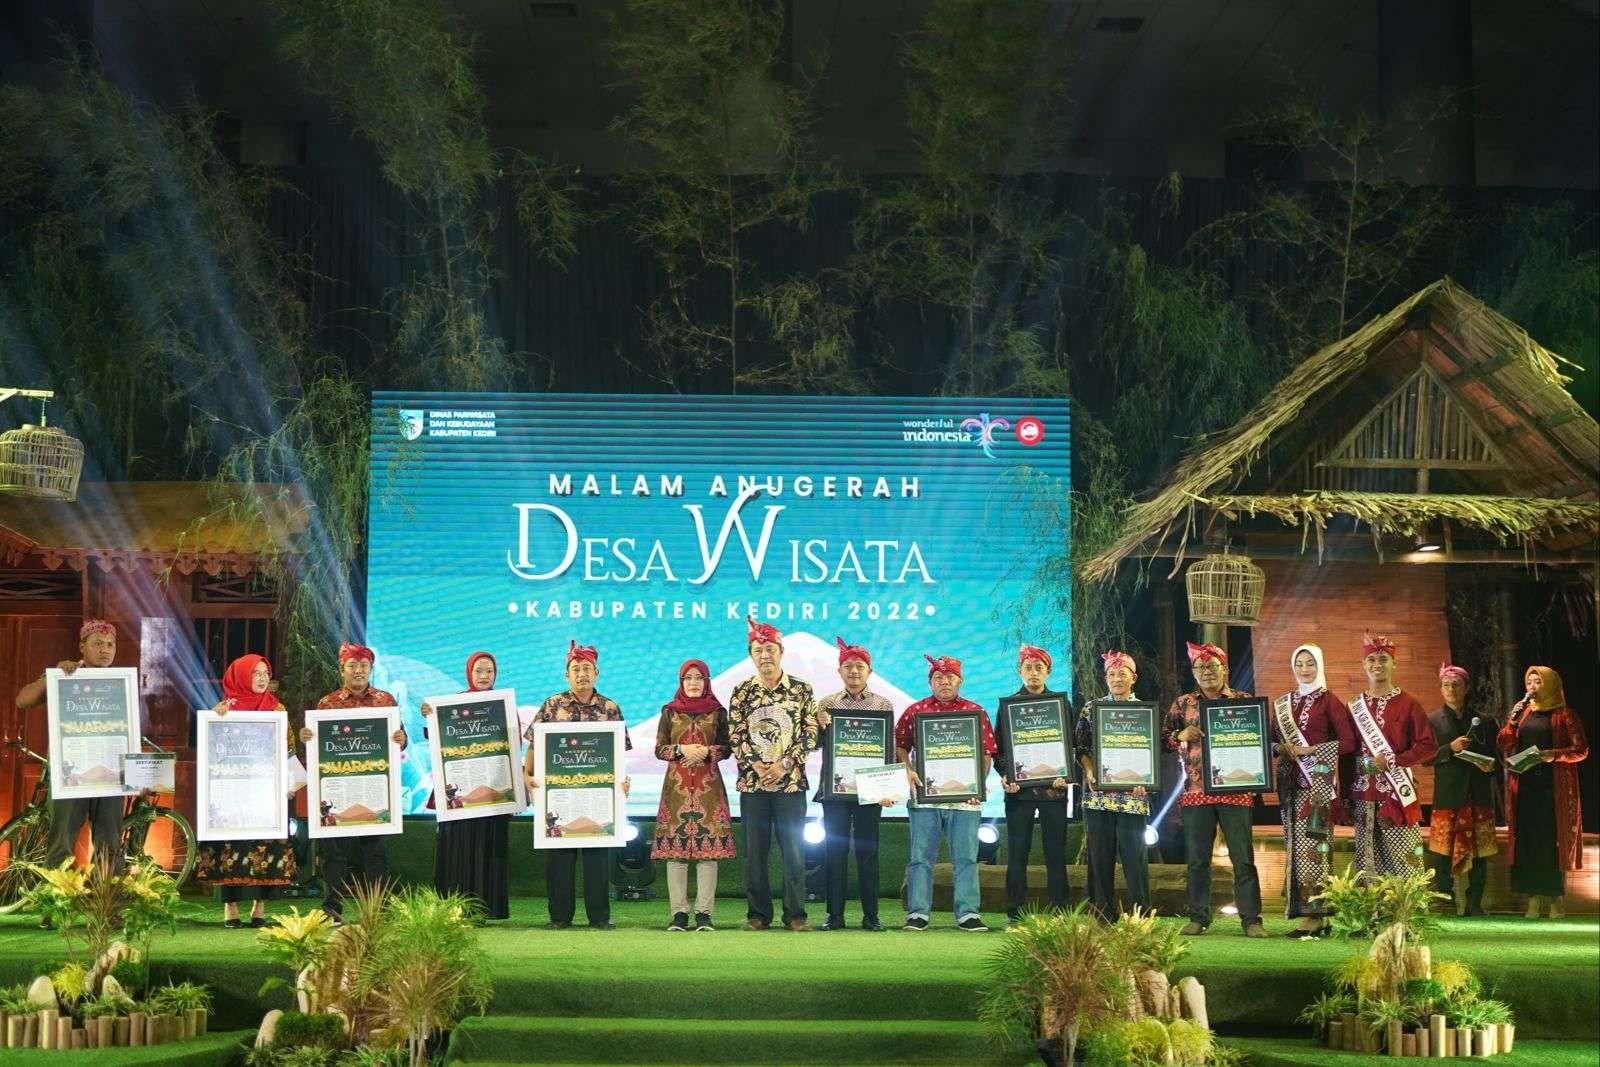 Bupati Kediri Hanindito Himawan Pramana Dorong Tingkatkan Potensi Desa dengan Anugerah Desa Wisata (Foto Kominfo Kabupaten Kediri)